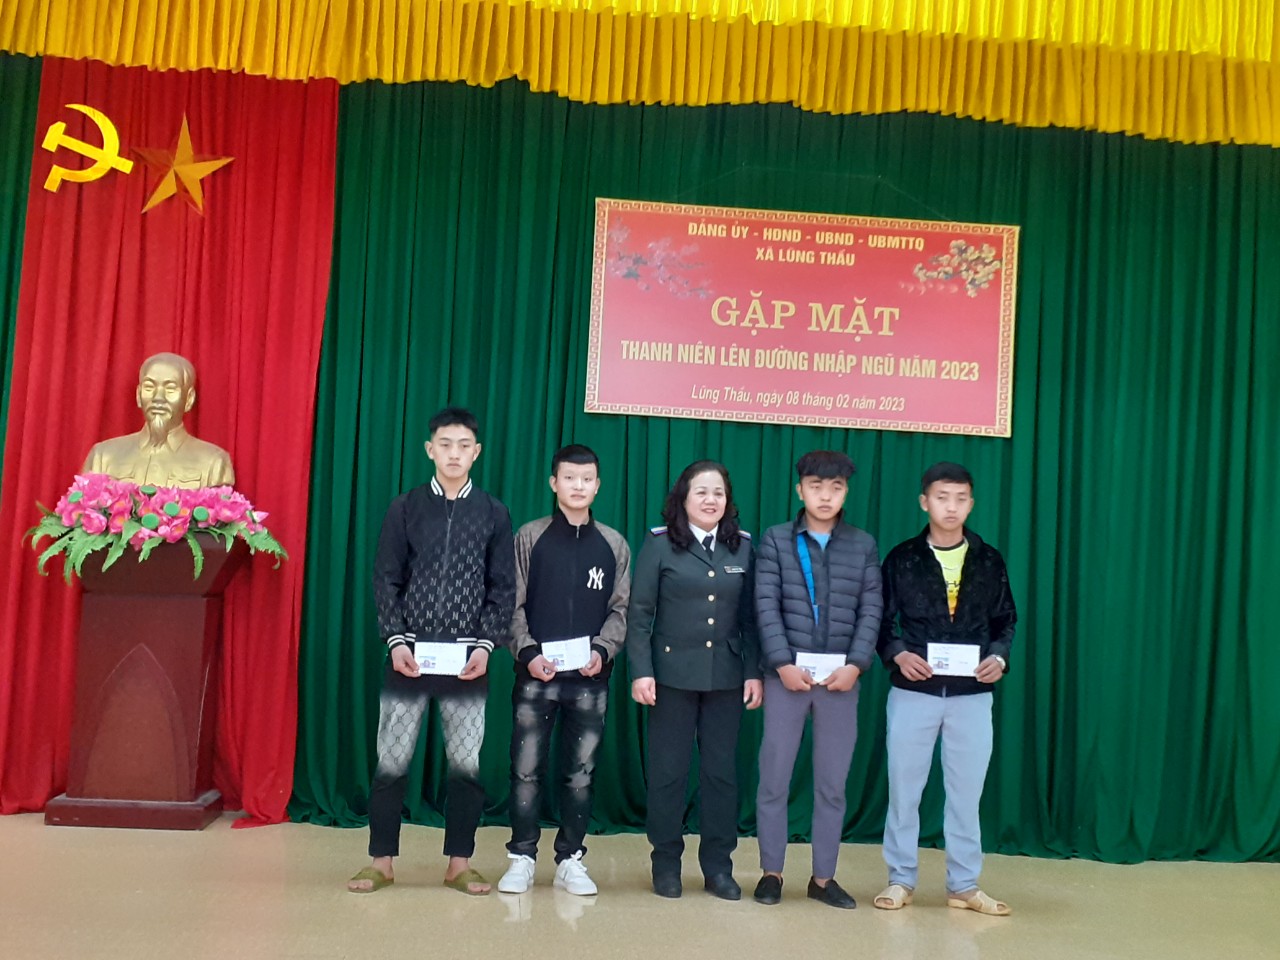 Chi cục Thi hành án dân sự huyện Đồng Văn tặng quà, động viên tân binh lên đường nhập ngũ tại xã Lũng Thầu